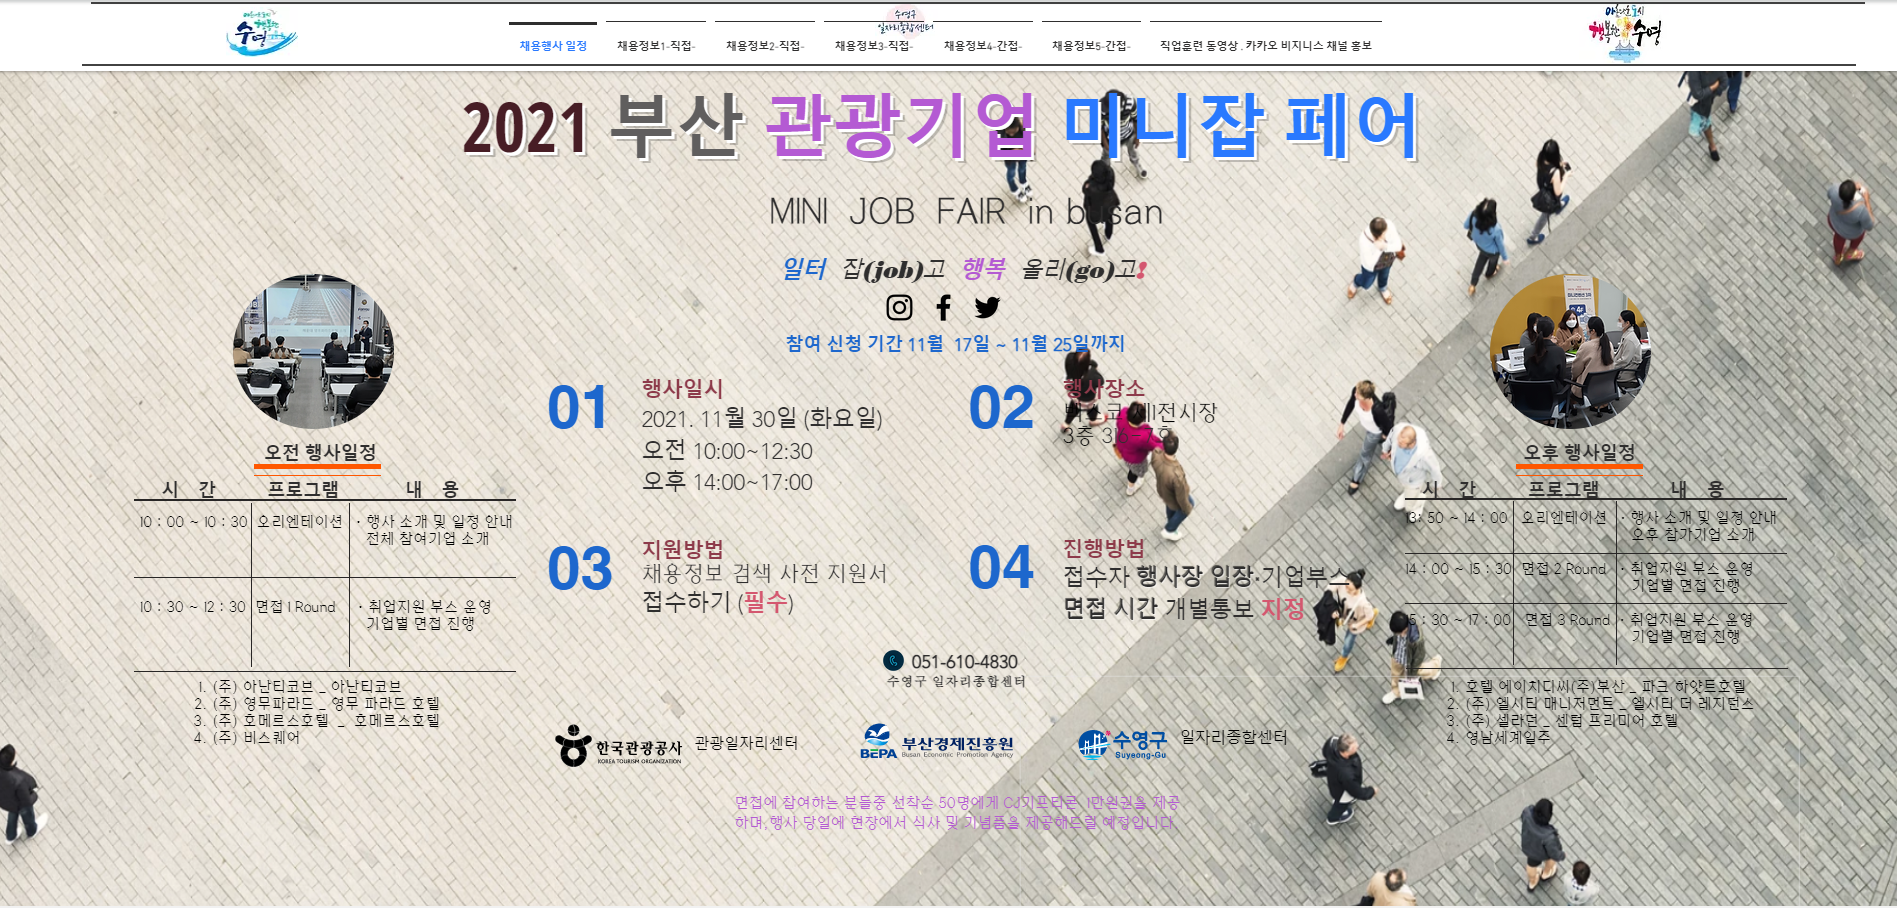 2021 부산 관광기업 미니 잡페어 개최 2